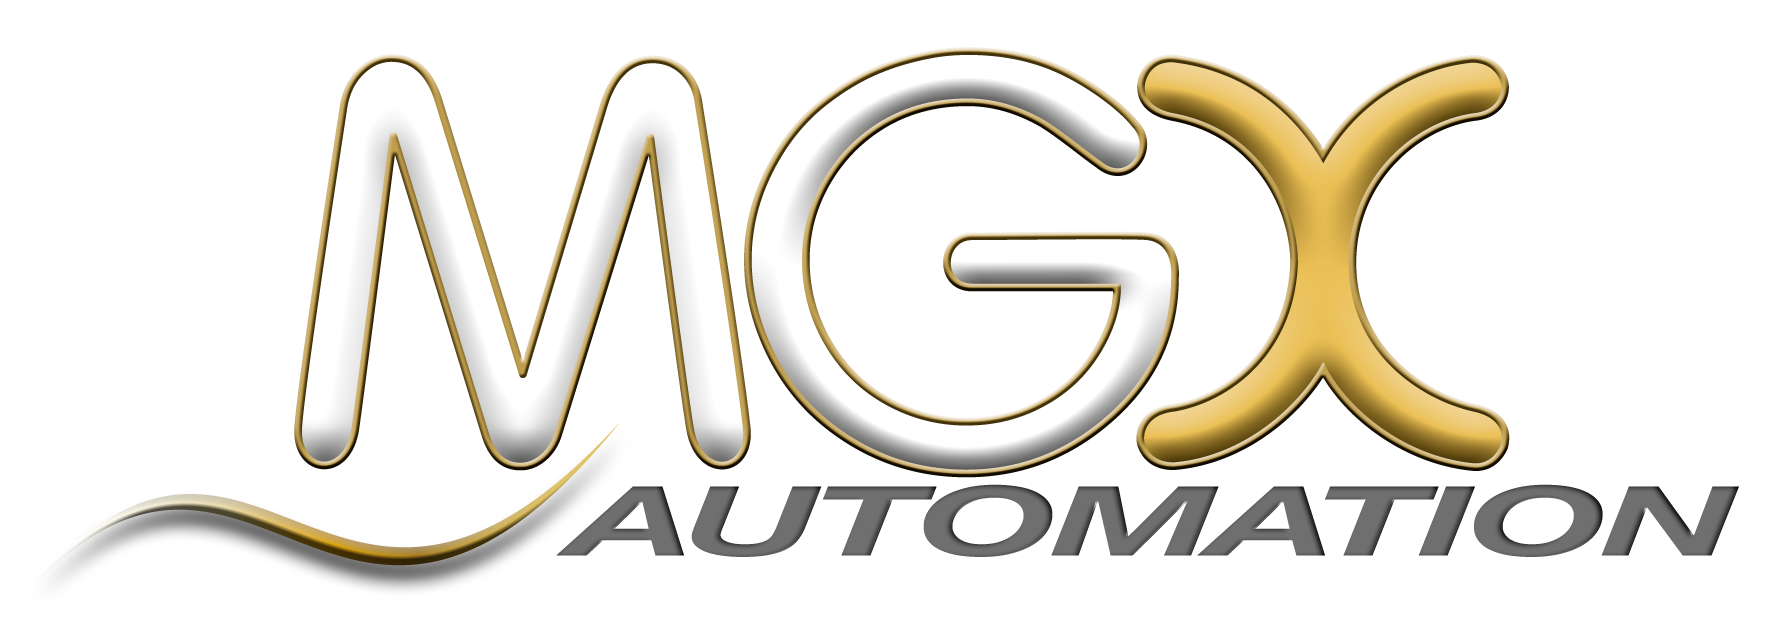 MGX Automation GmbH